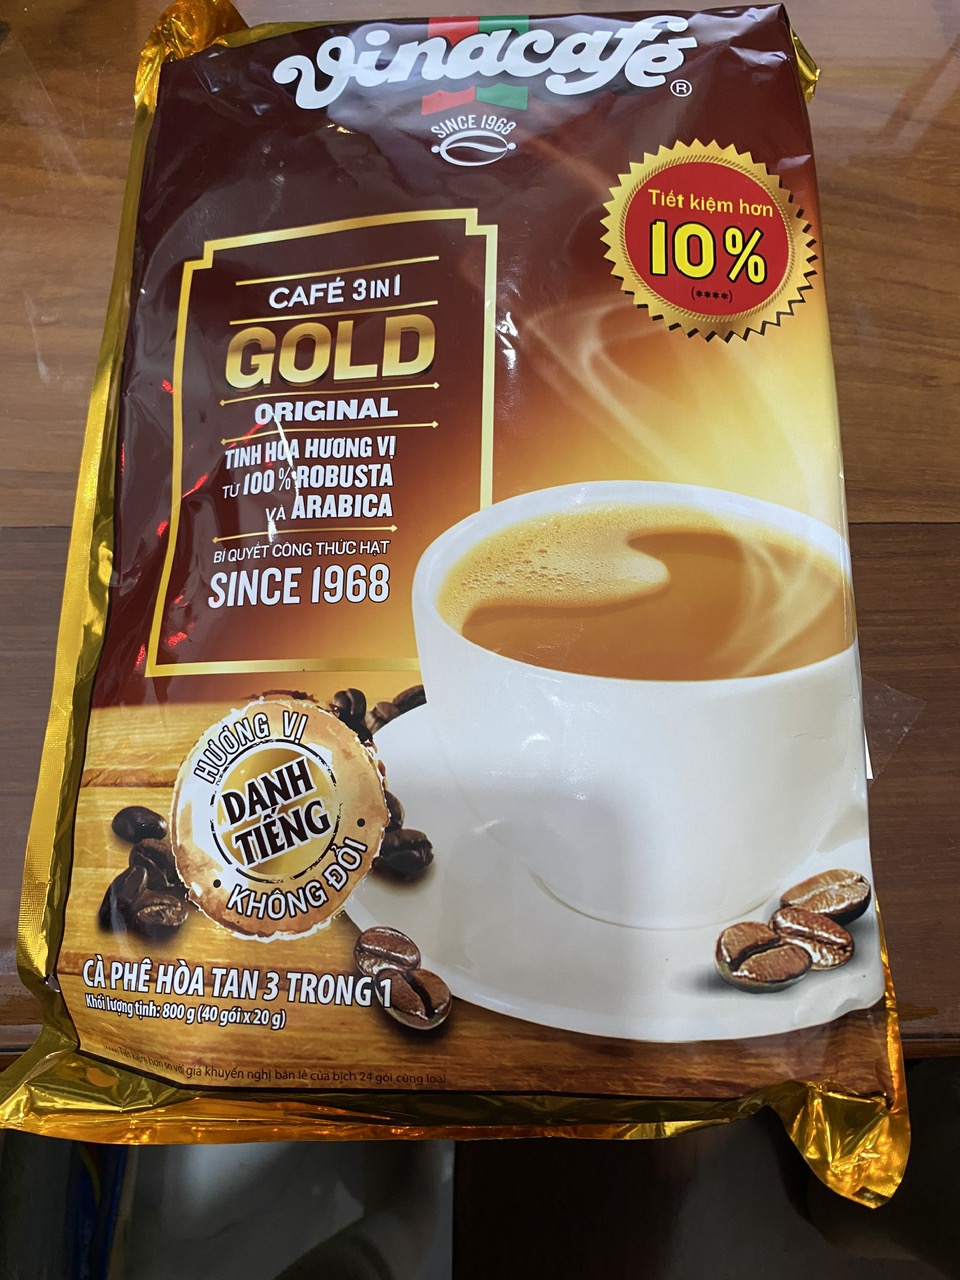 CAFE HOA TAN 3 TRONG 1. GOLD CAFE. TÚI LỚN 800 GRAM  40 GÓI X 20G. HƯƠNG